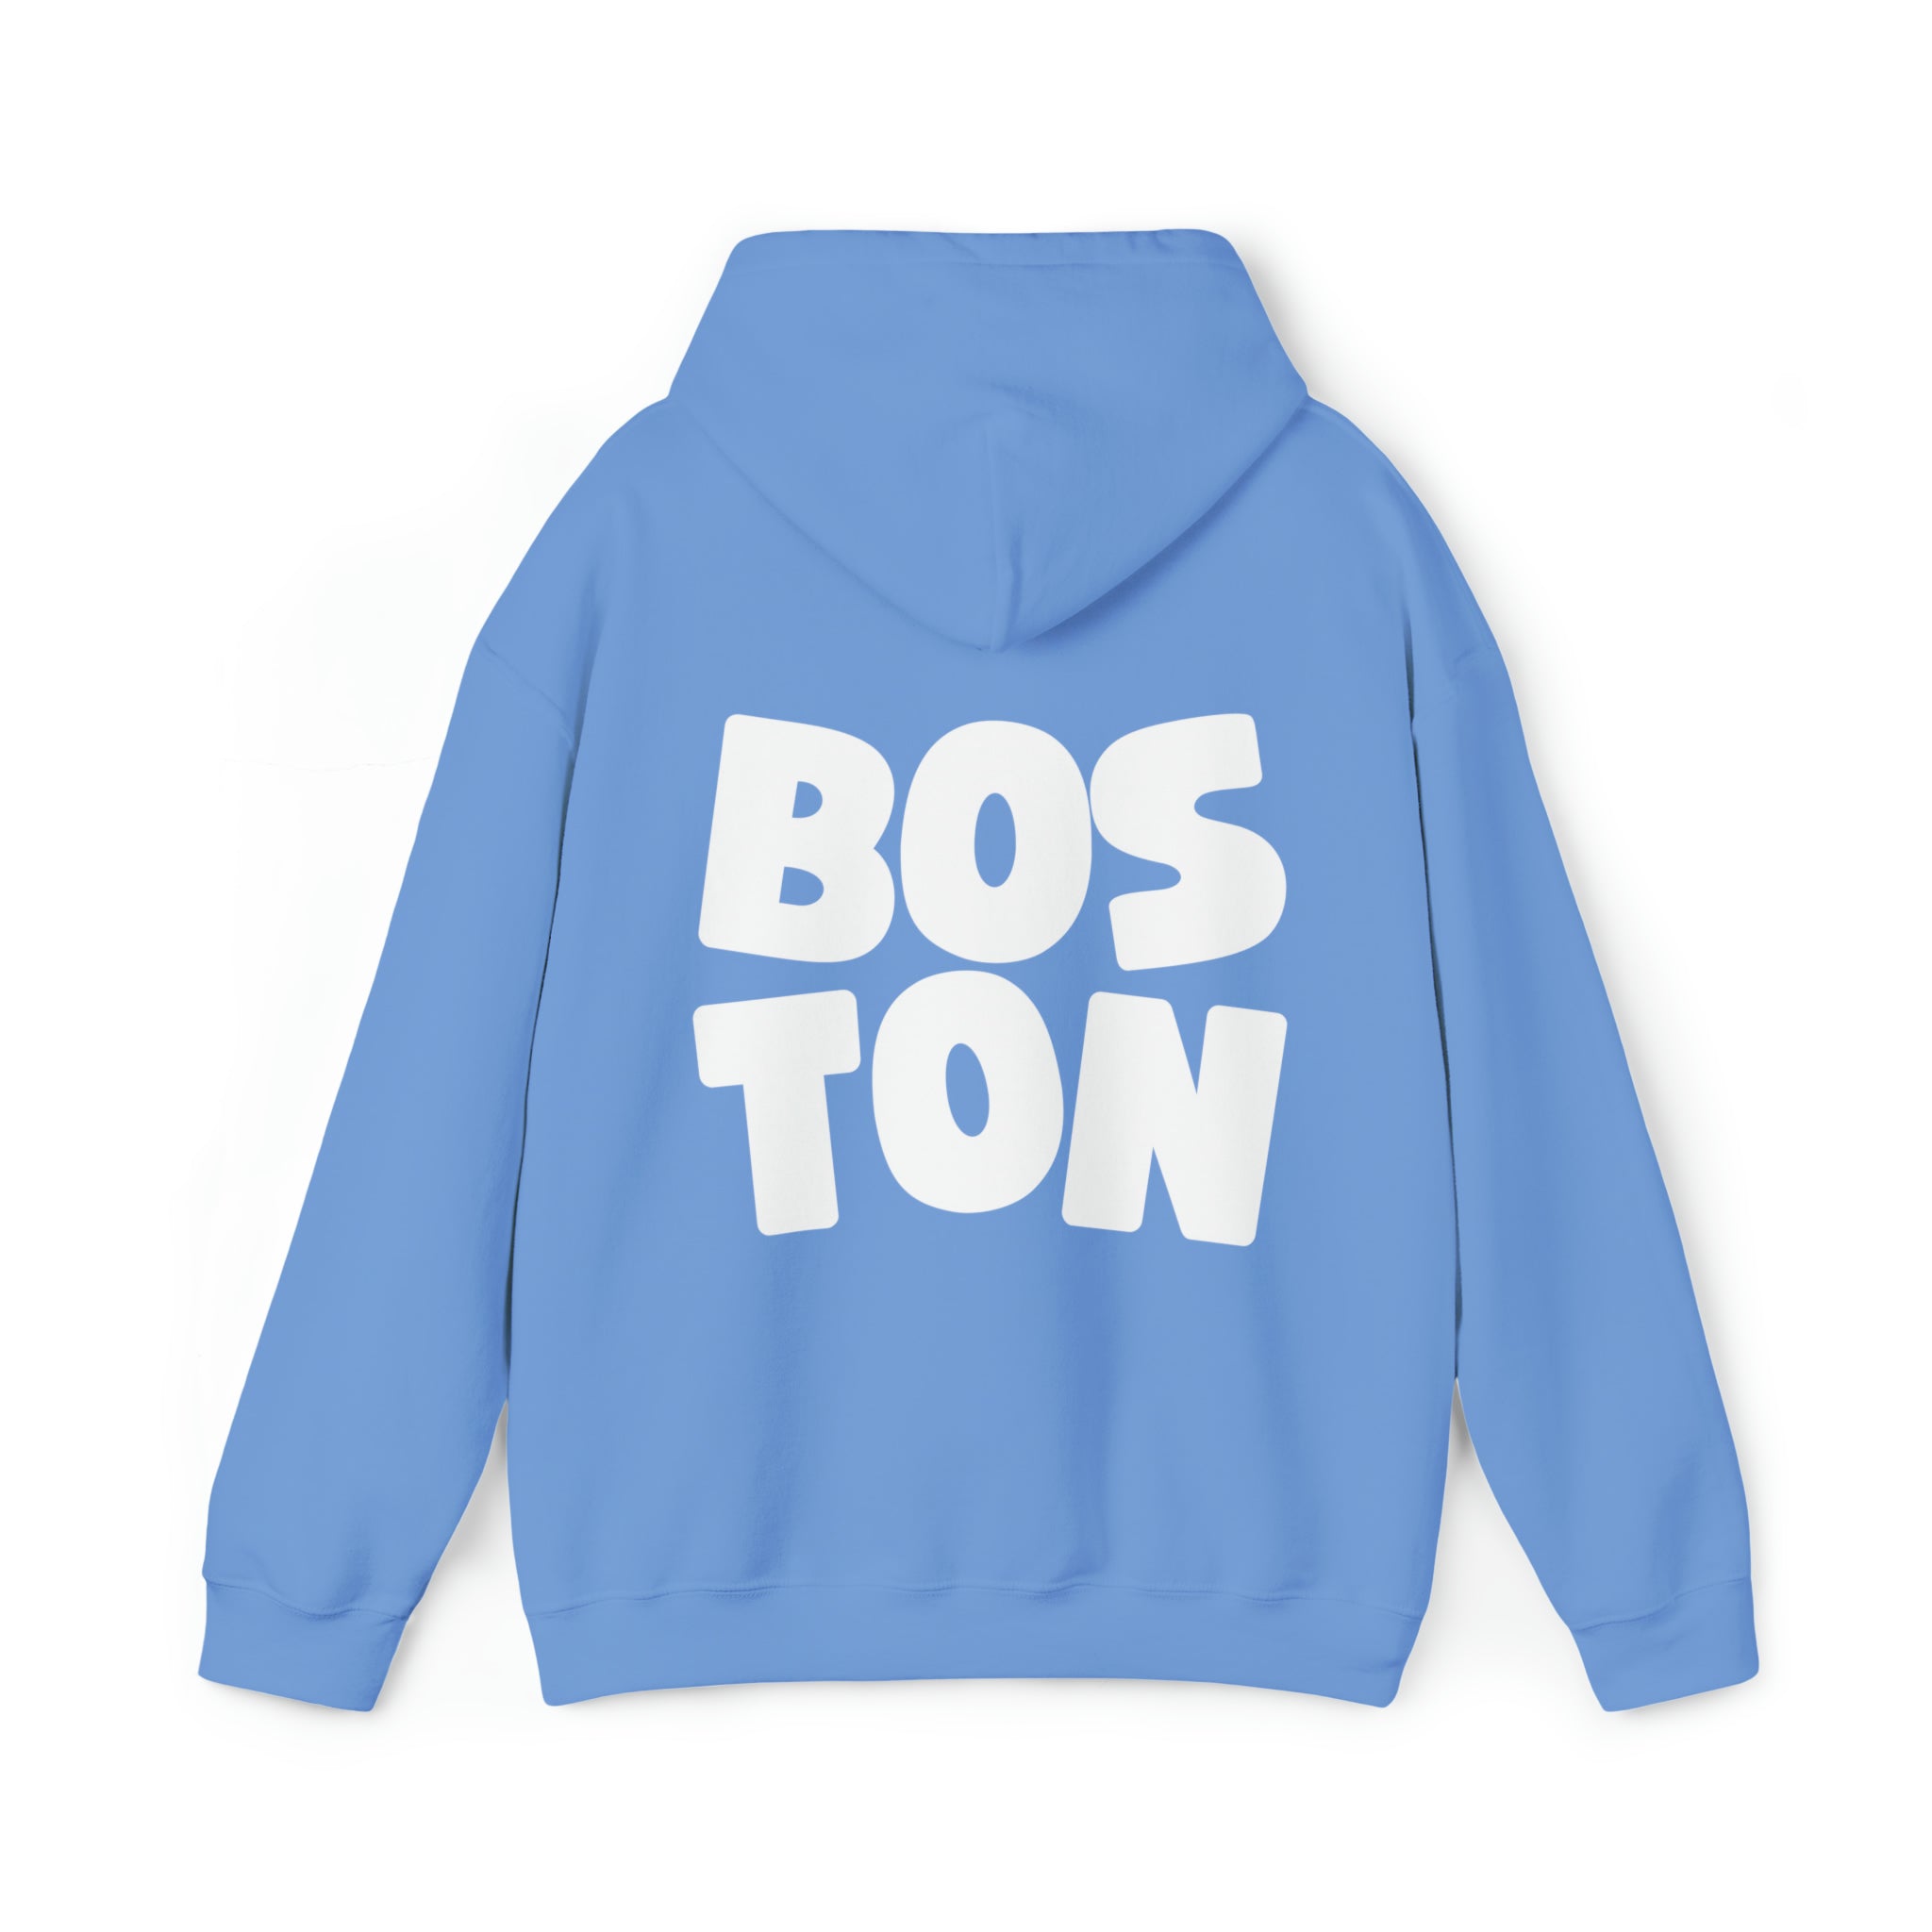 boston hoodie sweatshirt from GS Print shop